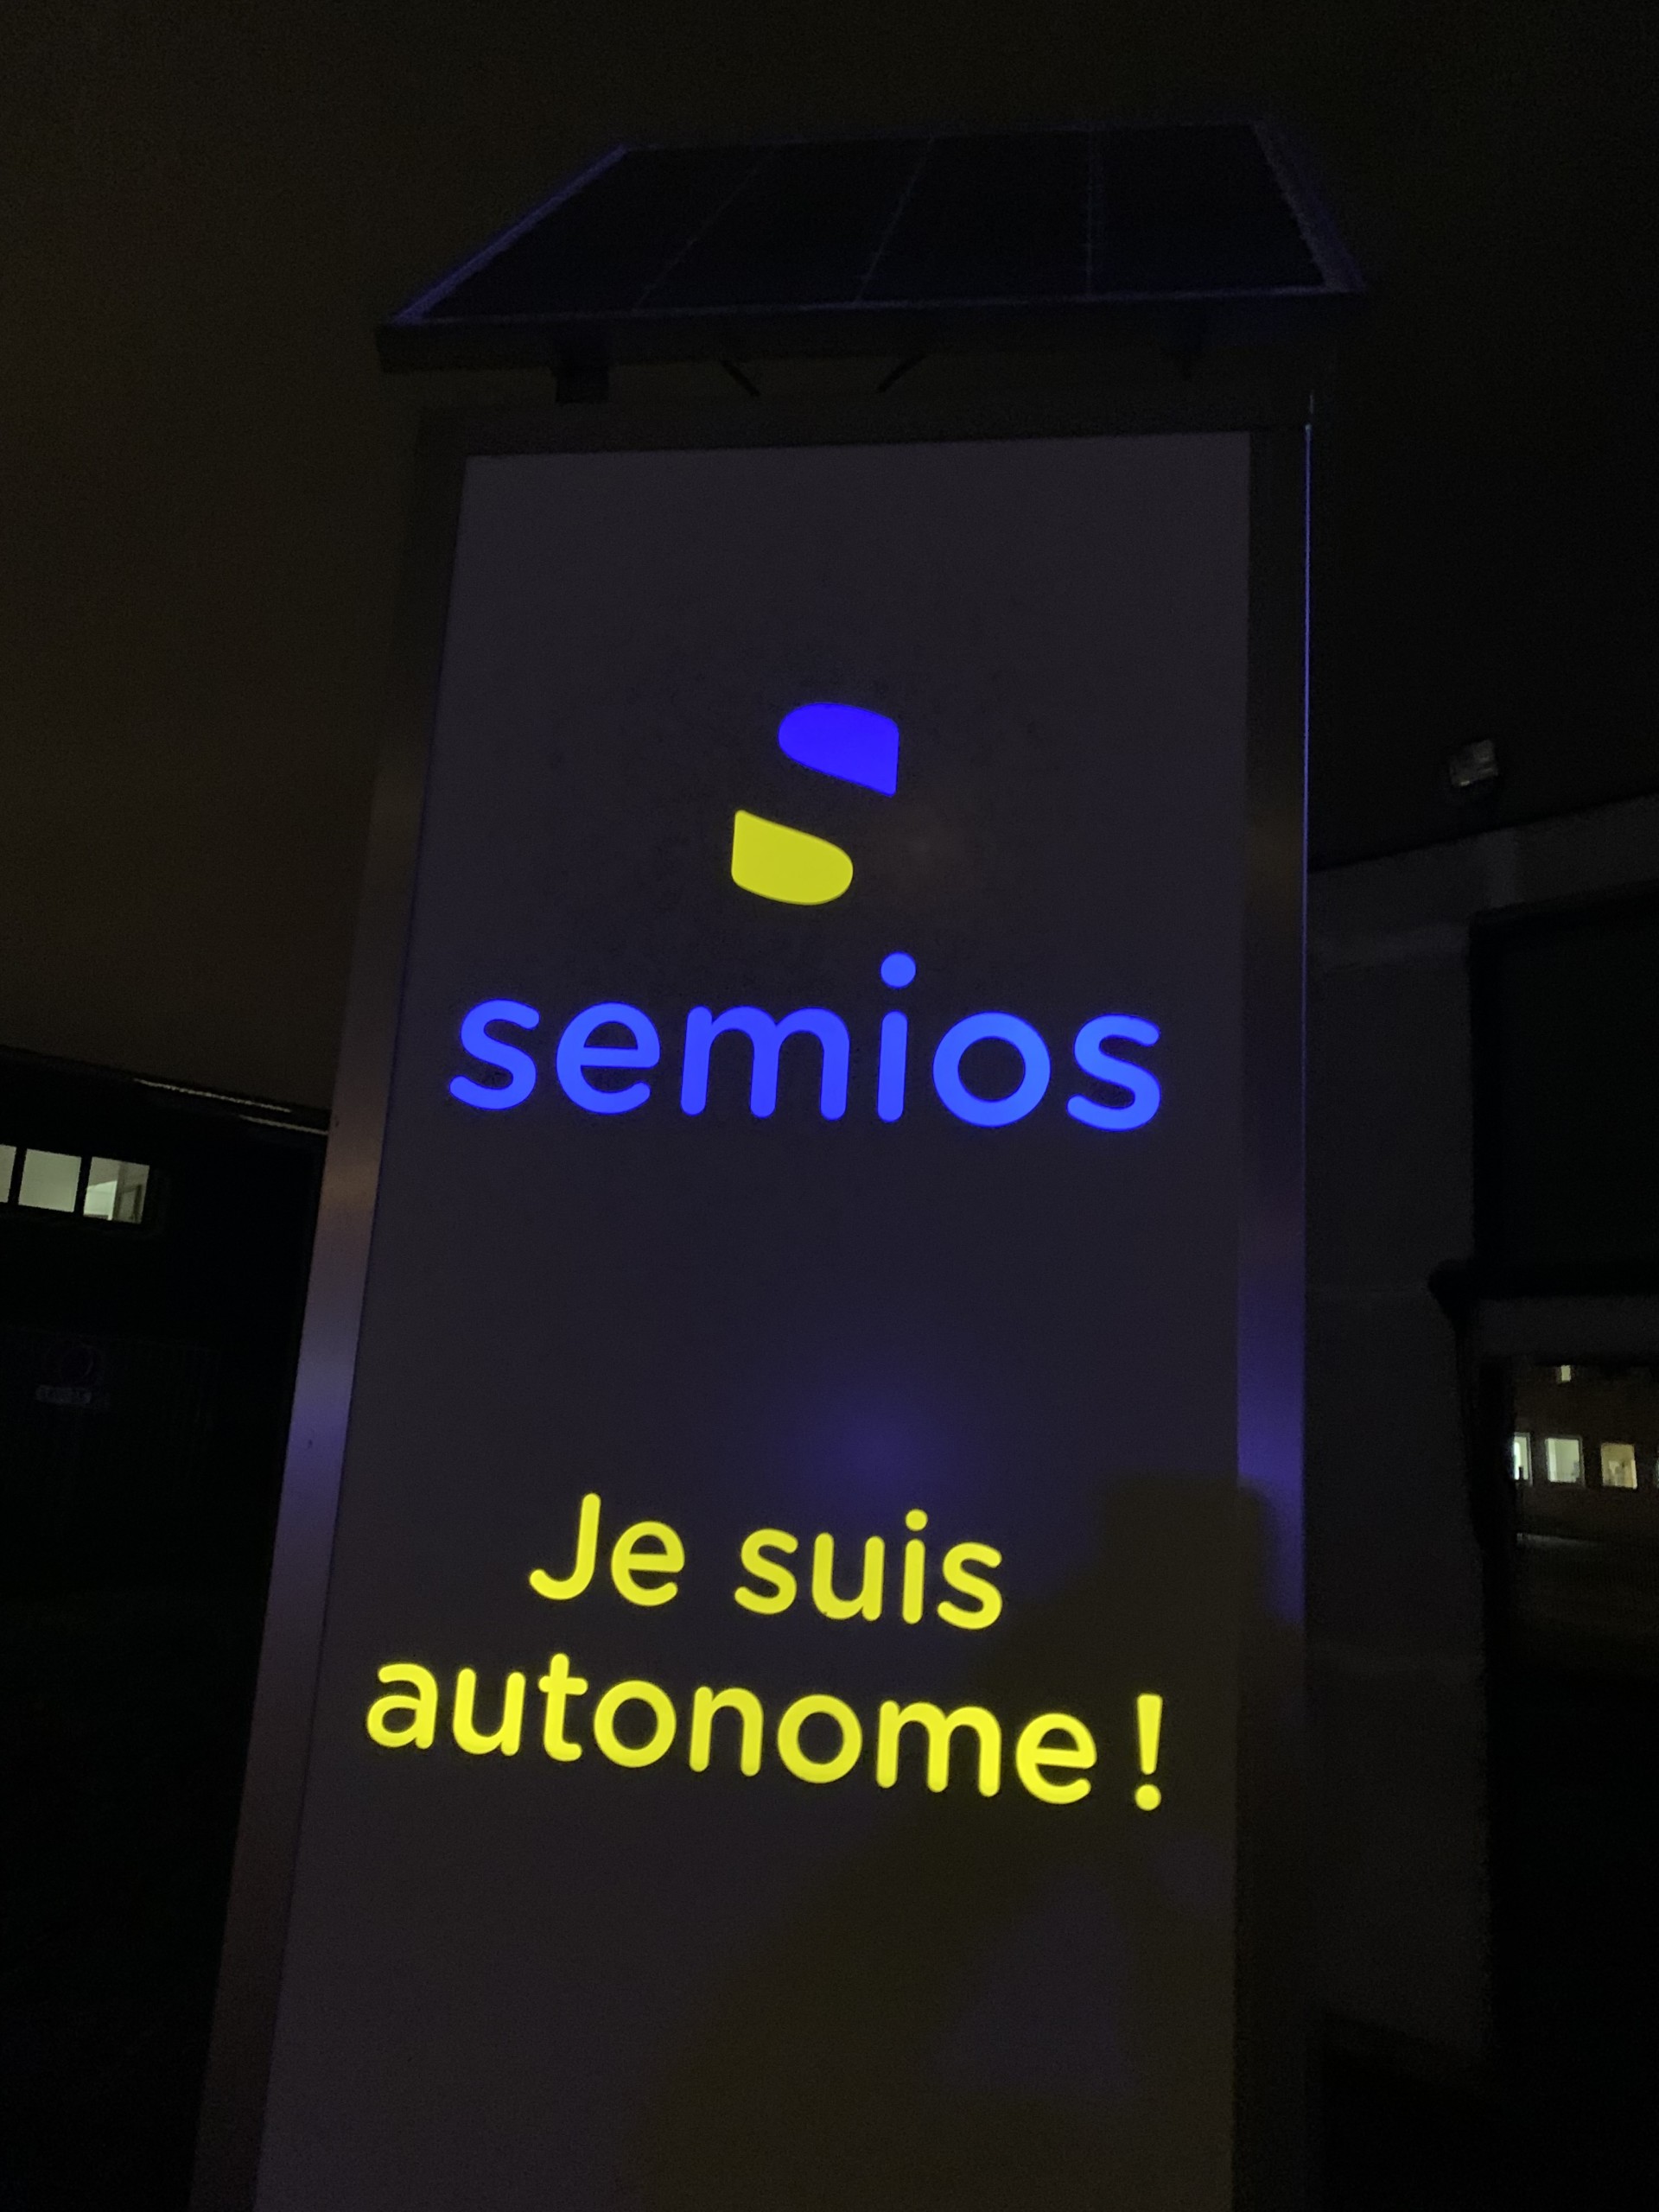 Semiosun - le totem autonome 100% personnalisable par Semios